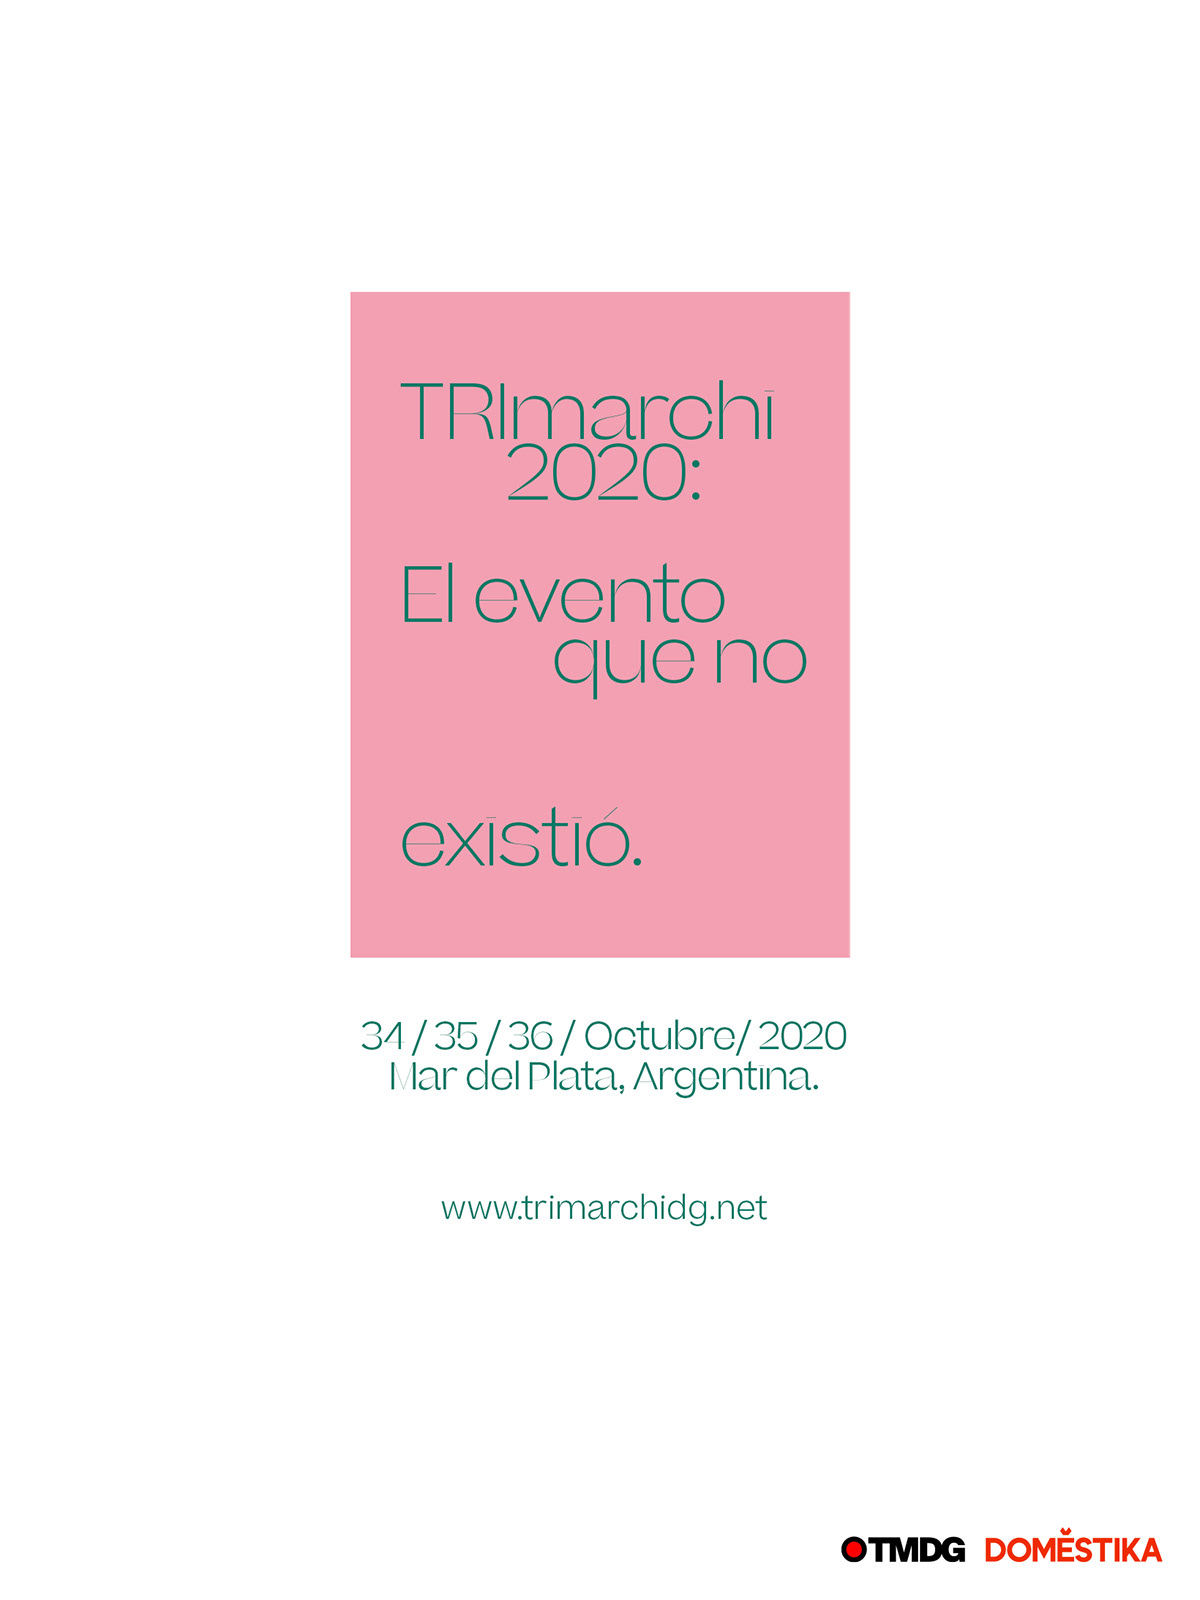 Concurso contest design poster trimarchi